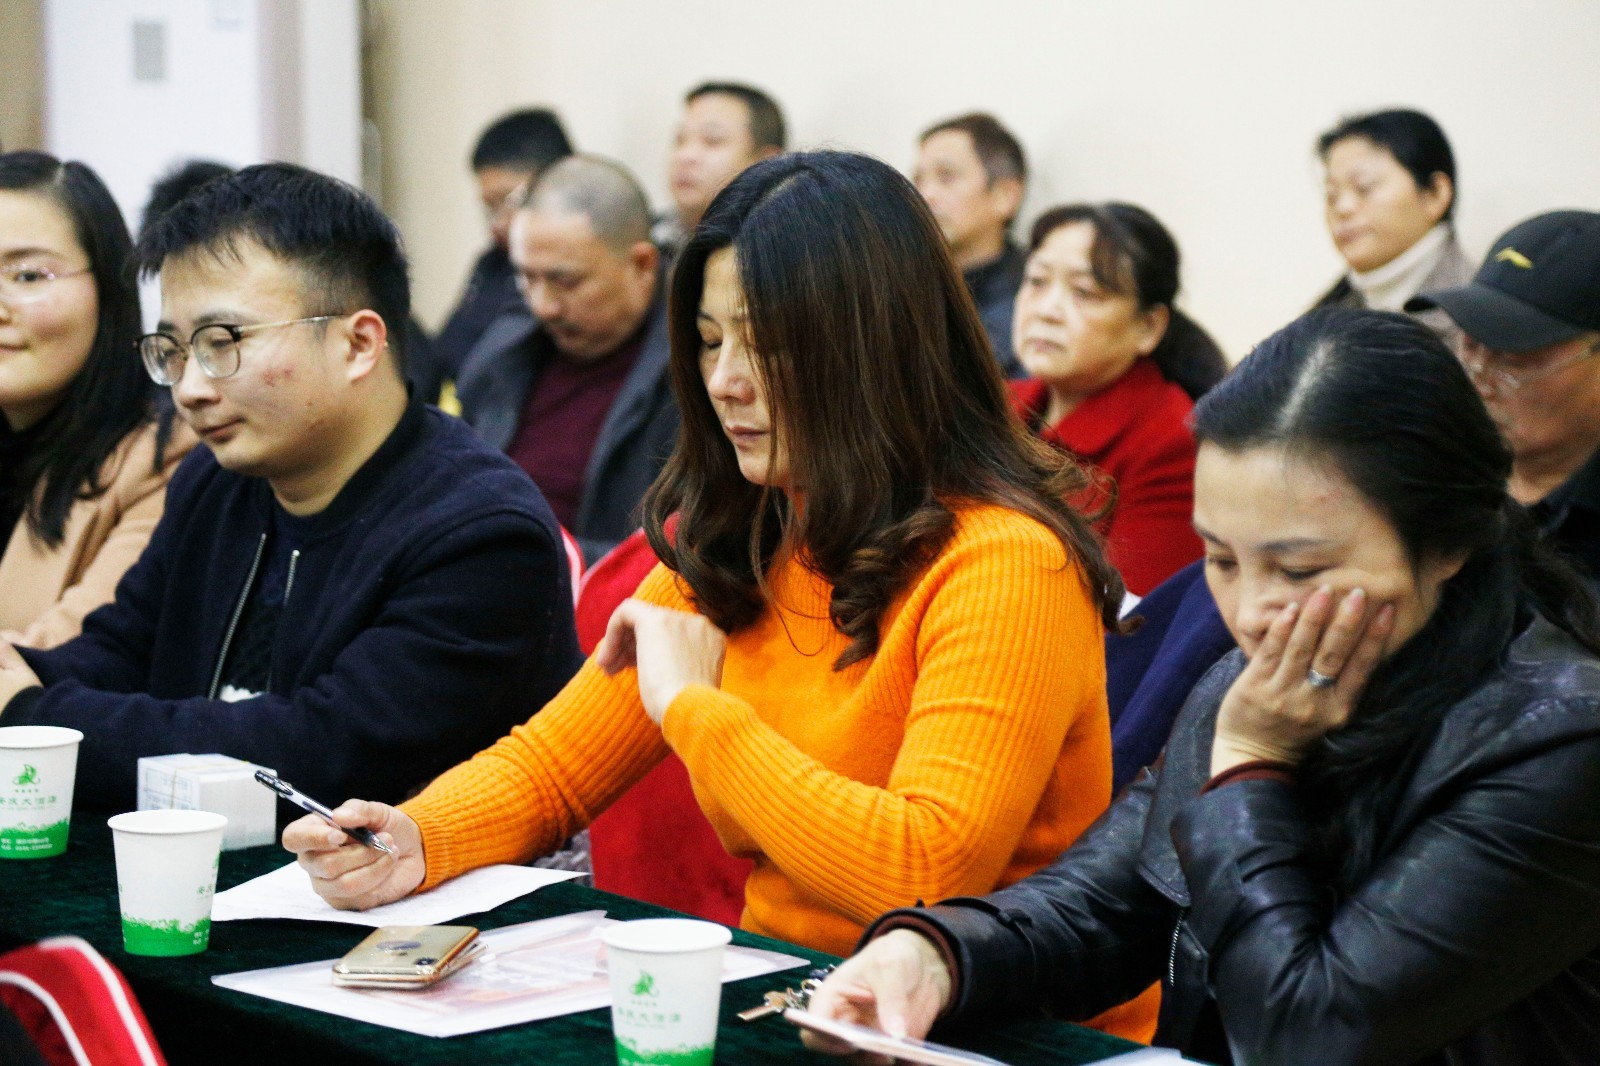 安徽安庆:清大东方消防学校开展冬季安全培训